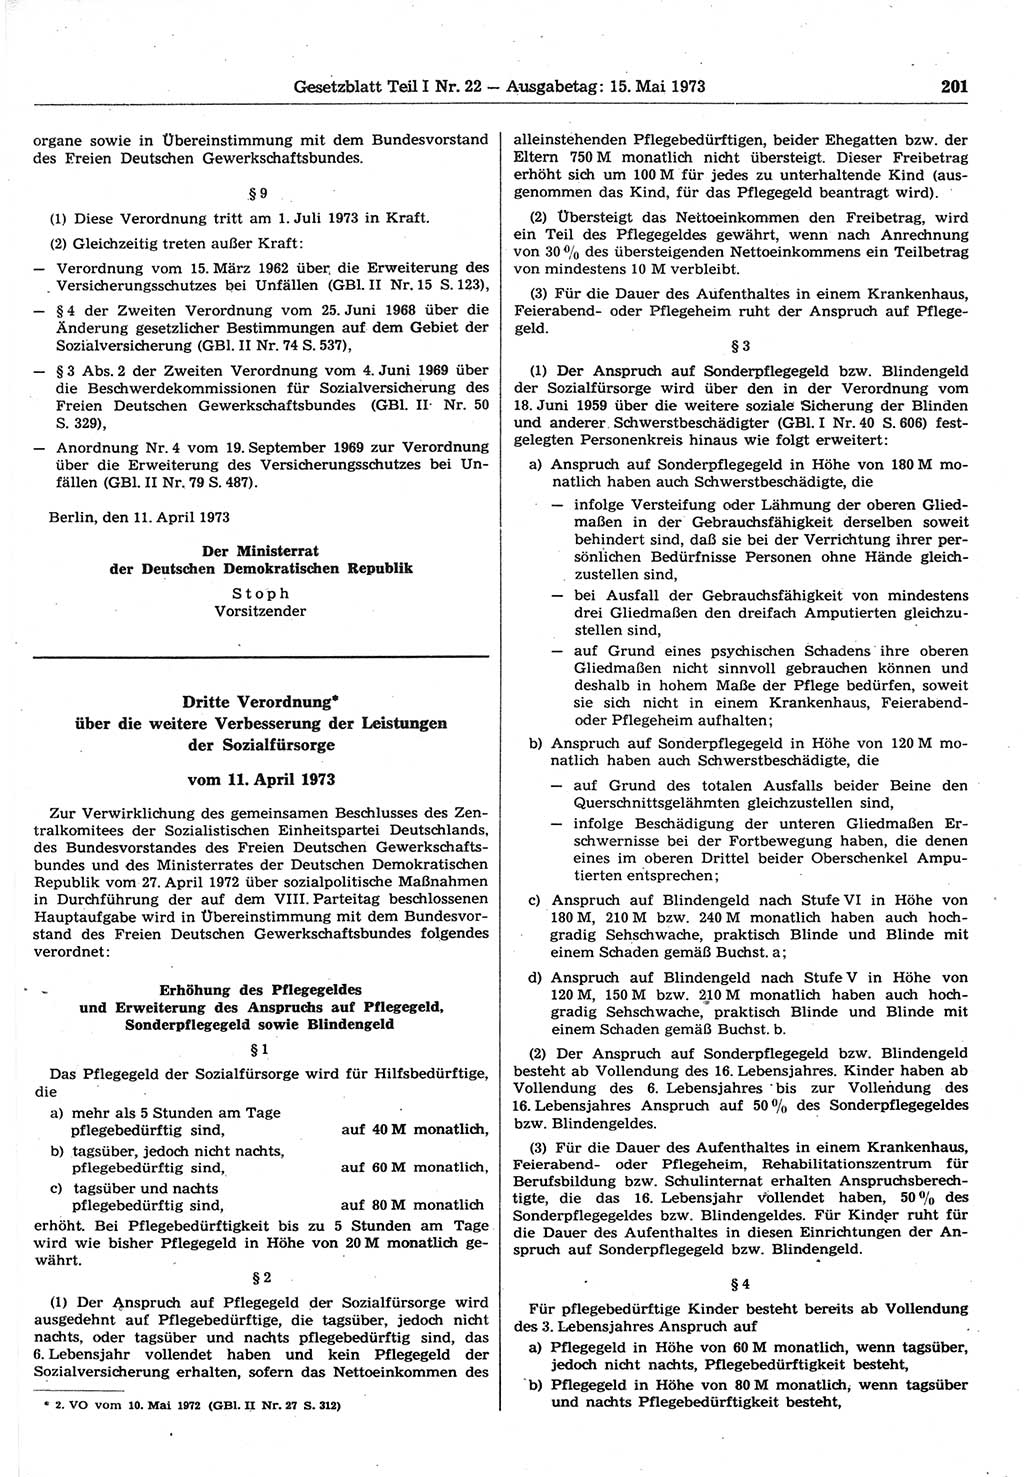 Gesetzblatt (GBl.) der Deutschen Demokratischen Republik (DDR) Teil Ⅰ 1973, Seite 201 (GBl. DDR Ⅰ 1973, S. 201)